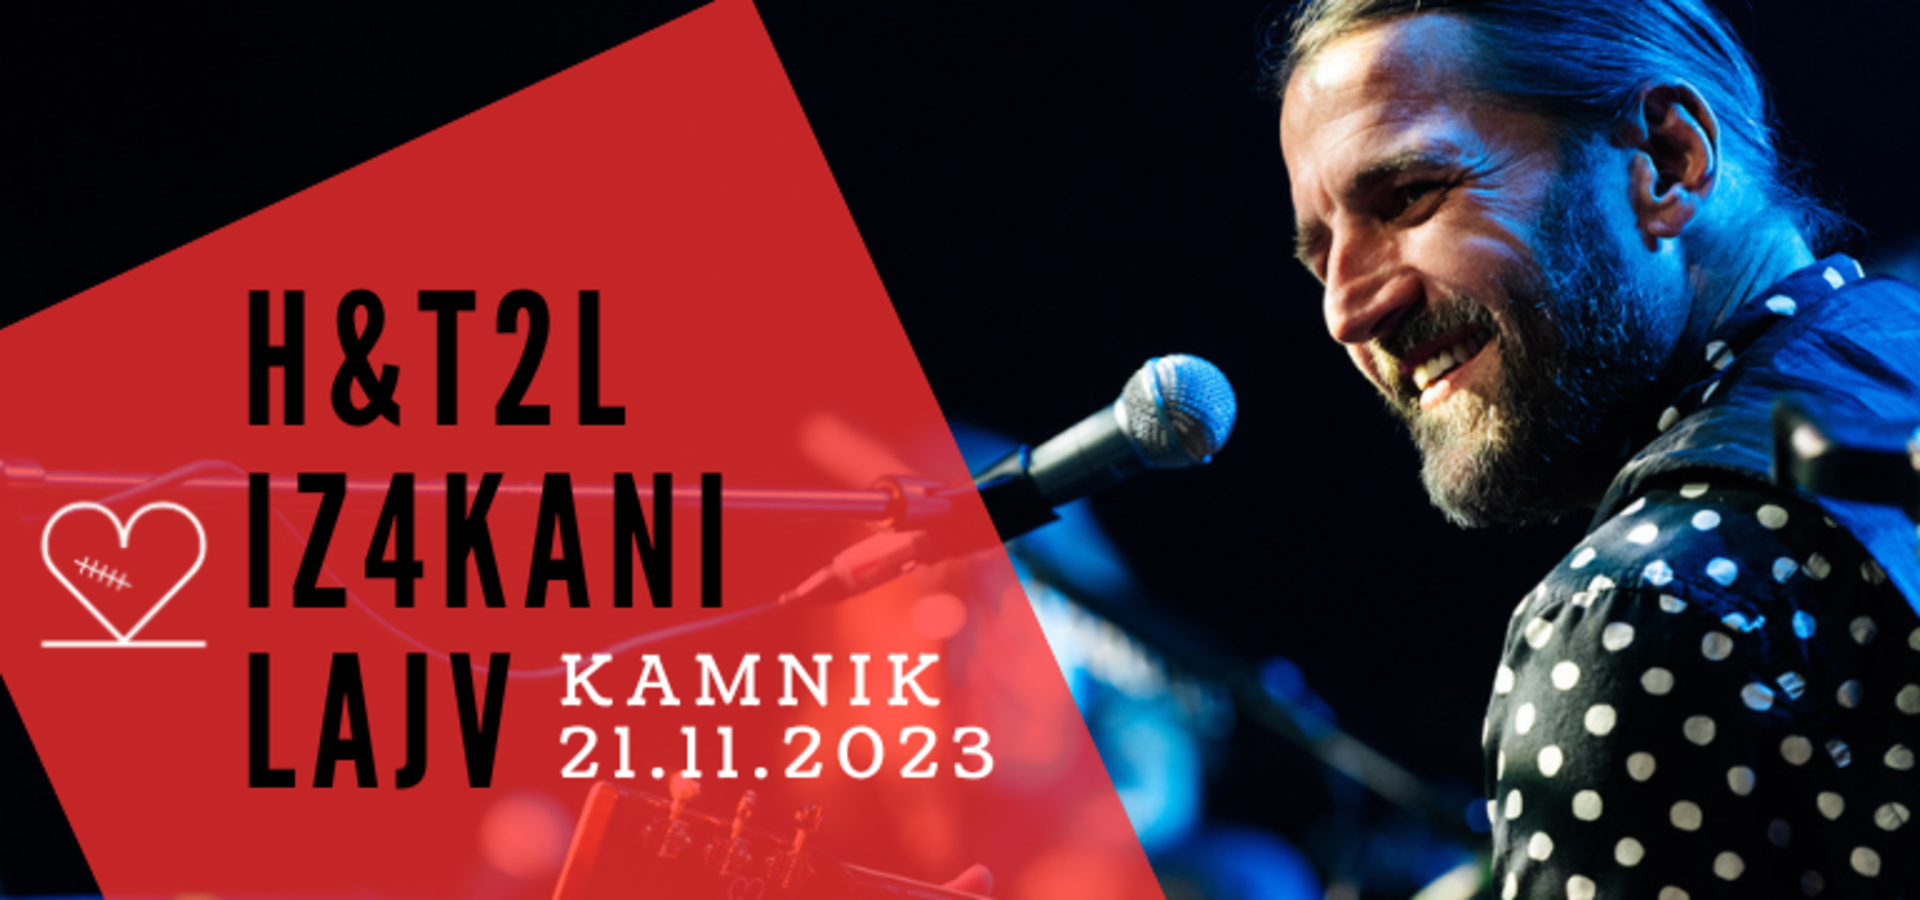 Hamo & Tribute 2 Love: Iz4Kani Lajv